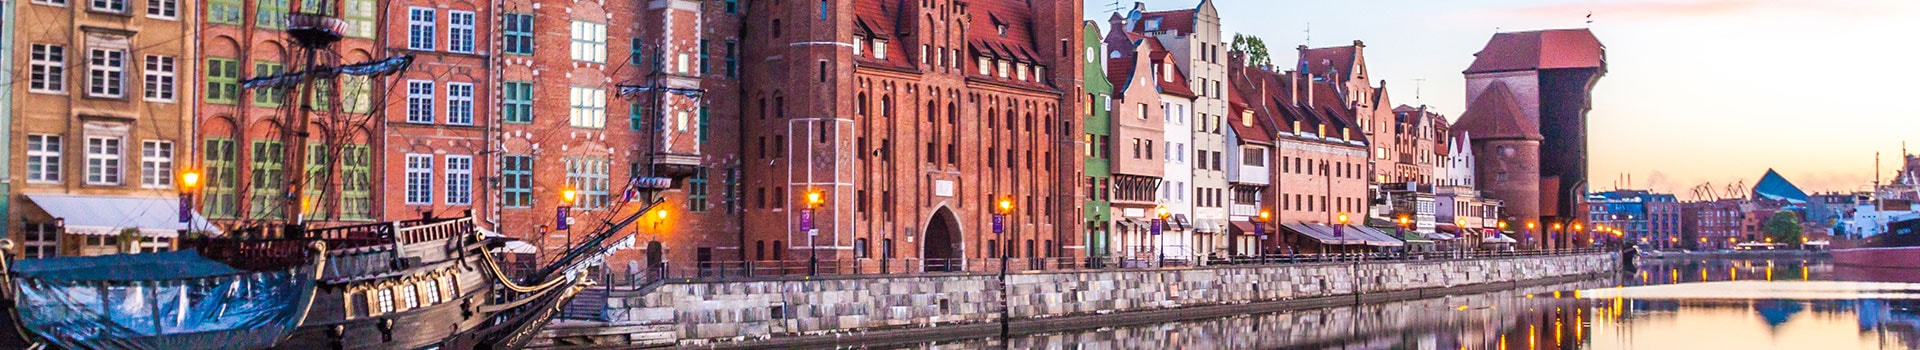 Estocolmo - Gdansk